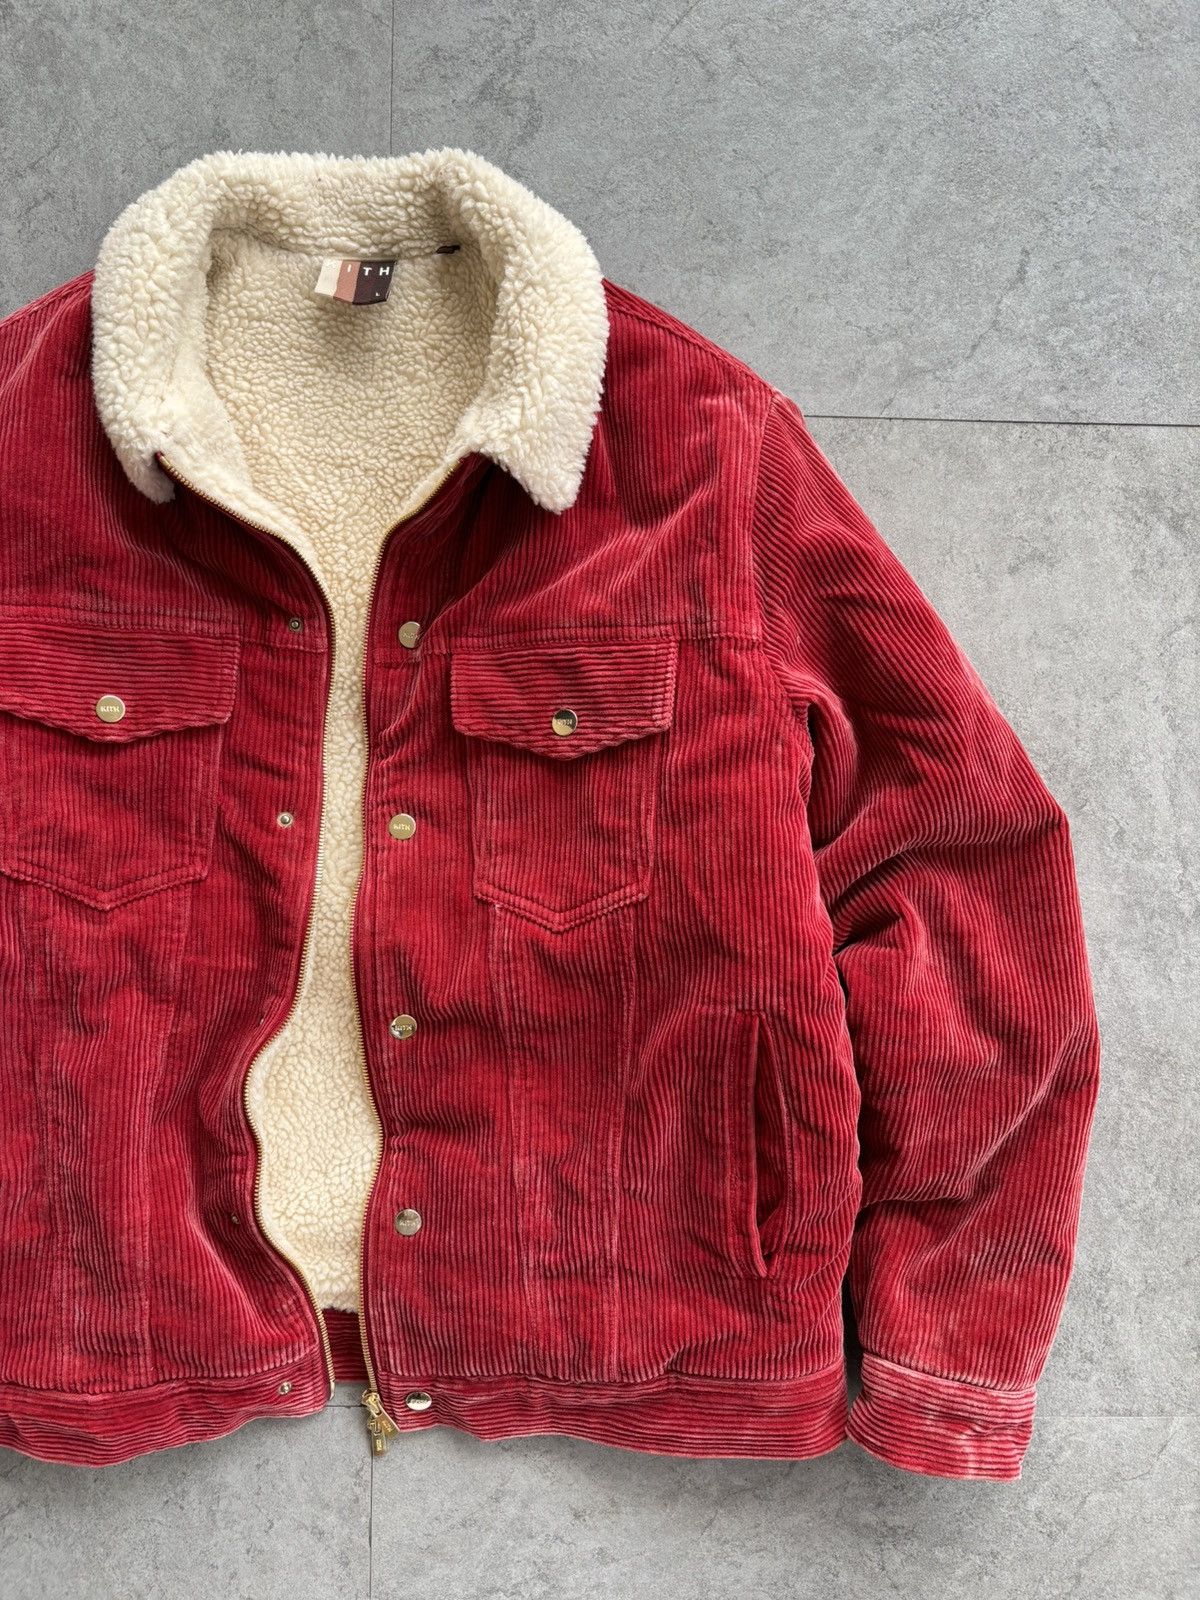 Kith Kith Corduroy Laight Jacket | Grailed